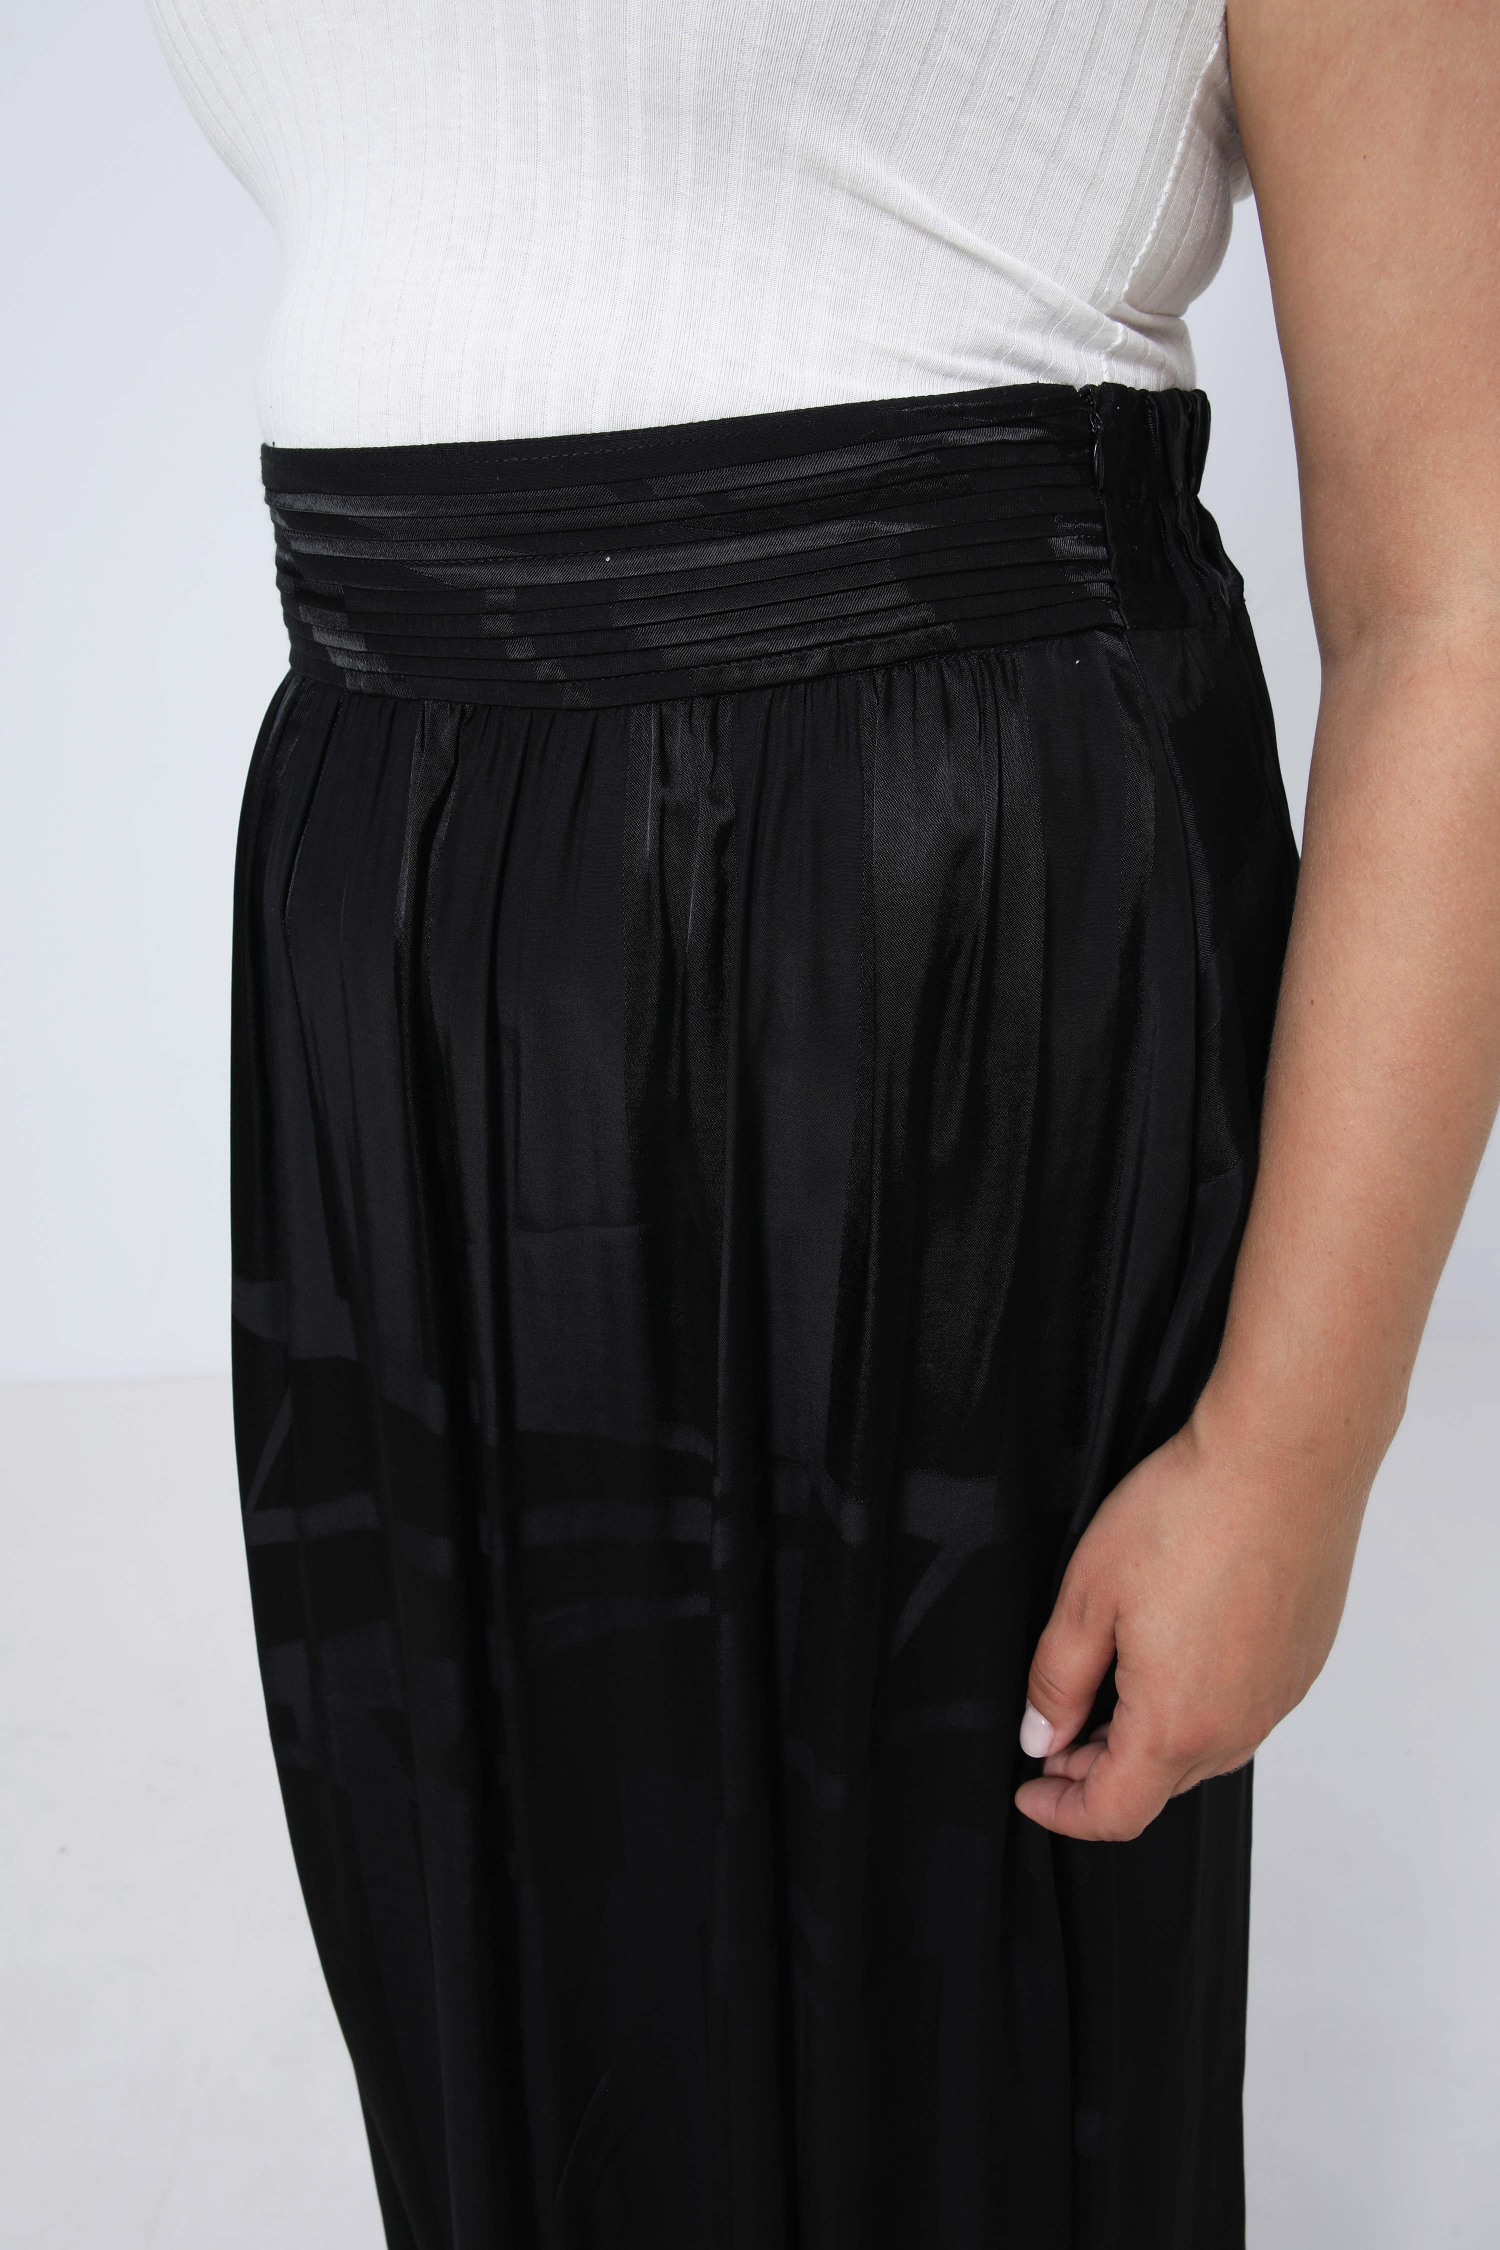 Long skirt in plain satin jacquard